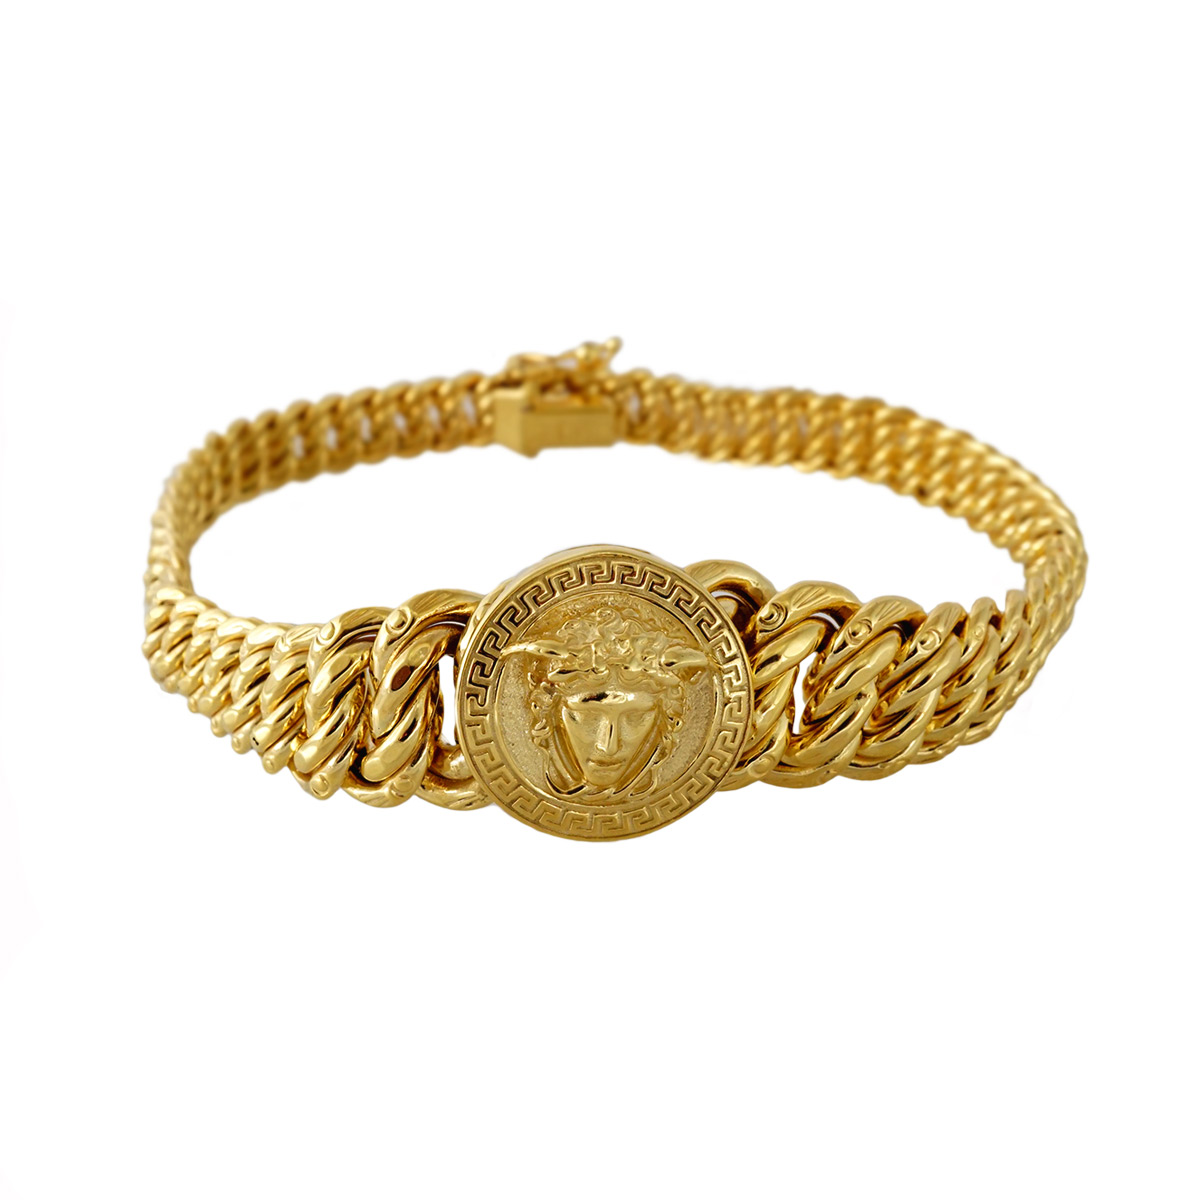 Herdenkings Twinkelen Wolkenkrabber Women's Versace Style gold Bracelet - Pochy Jewelry Factory